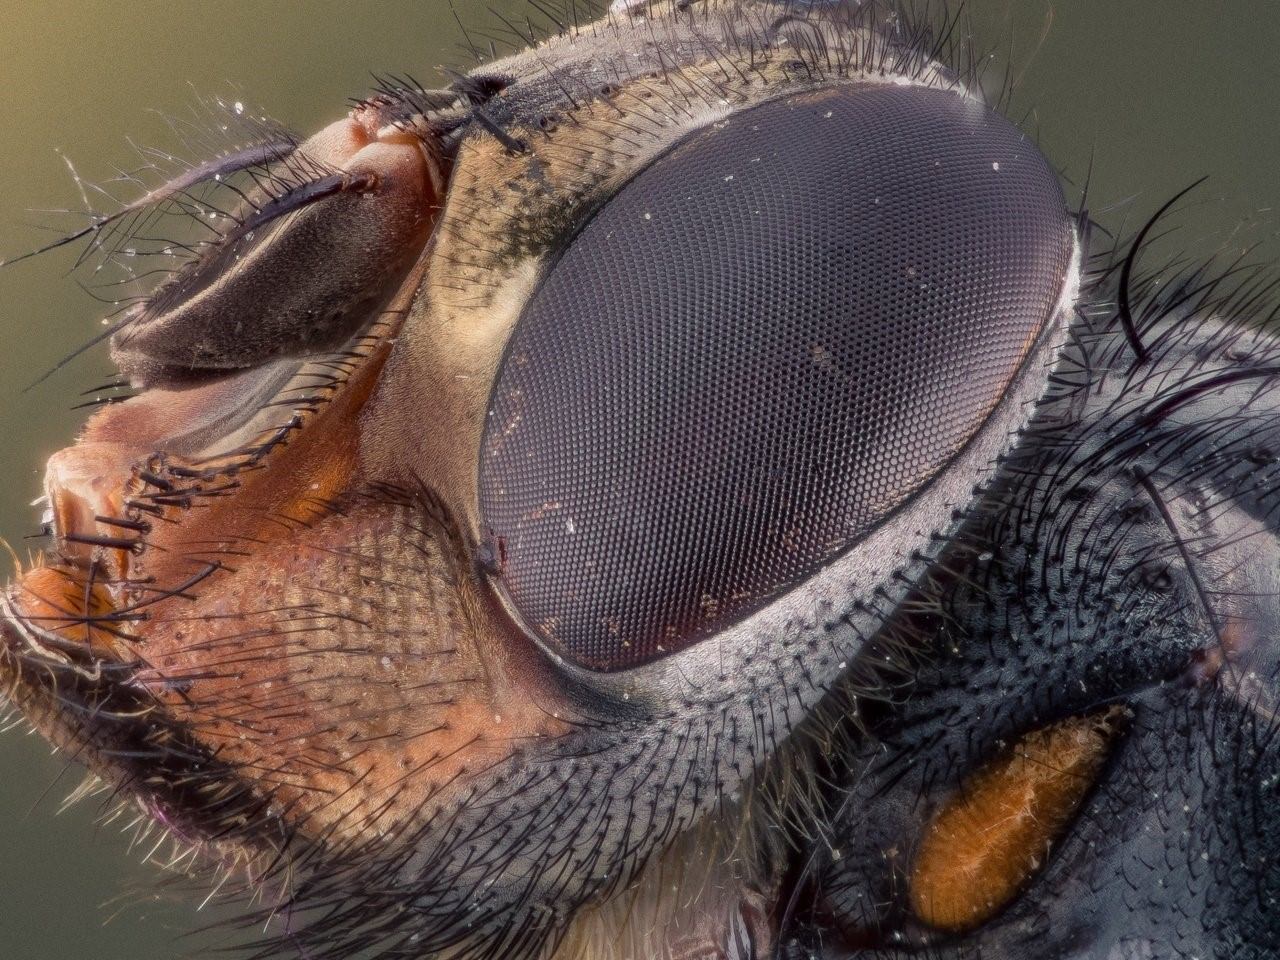 Глаз мухи под микроскопом фото